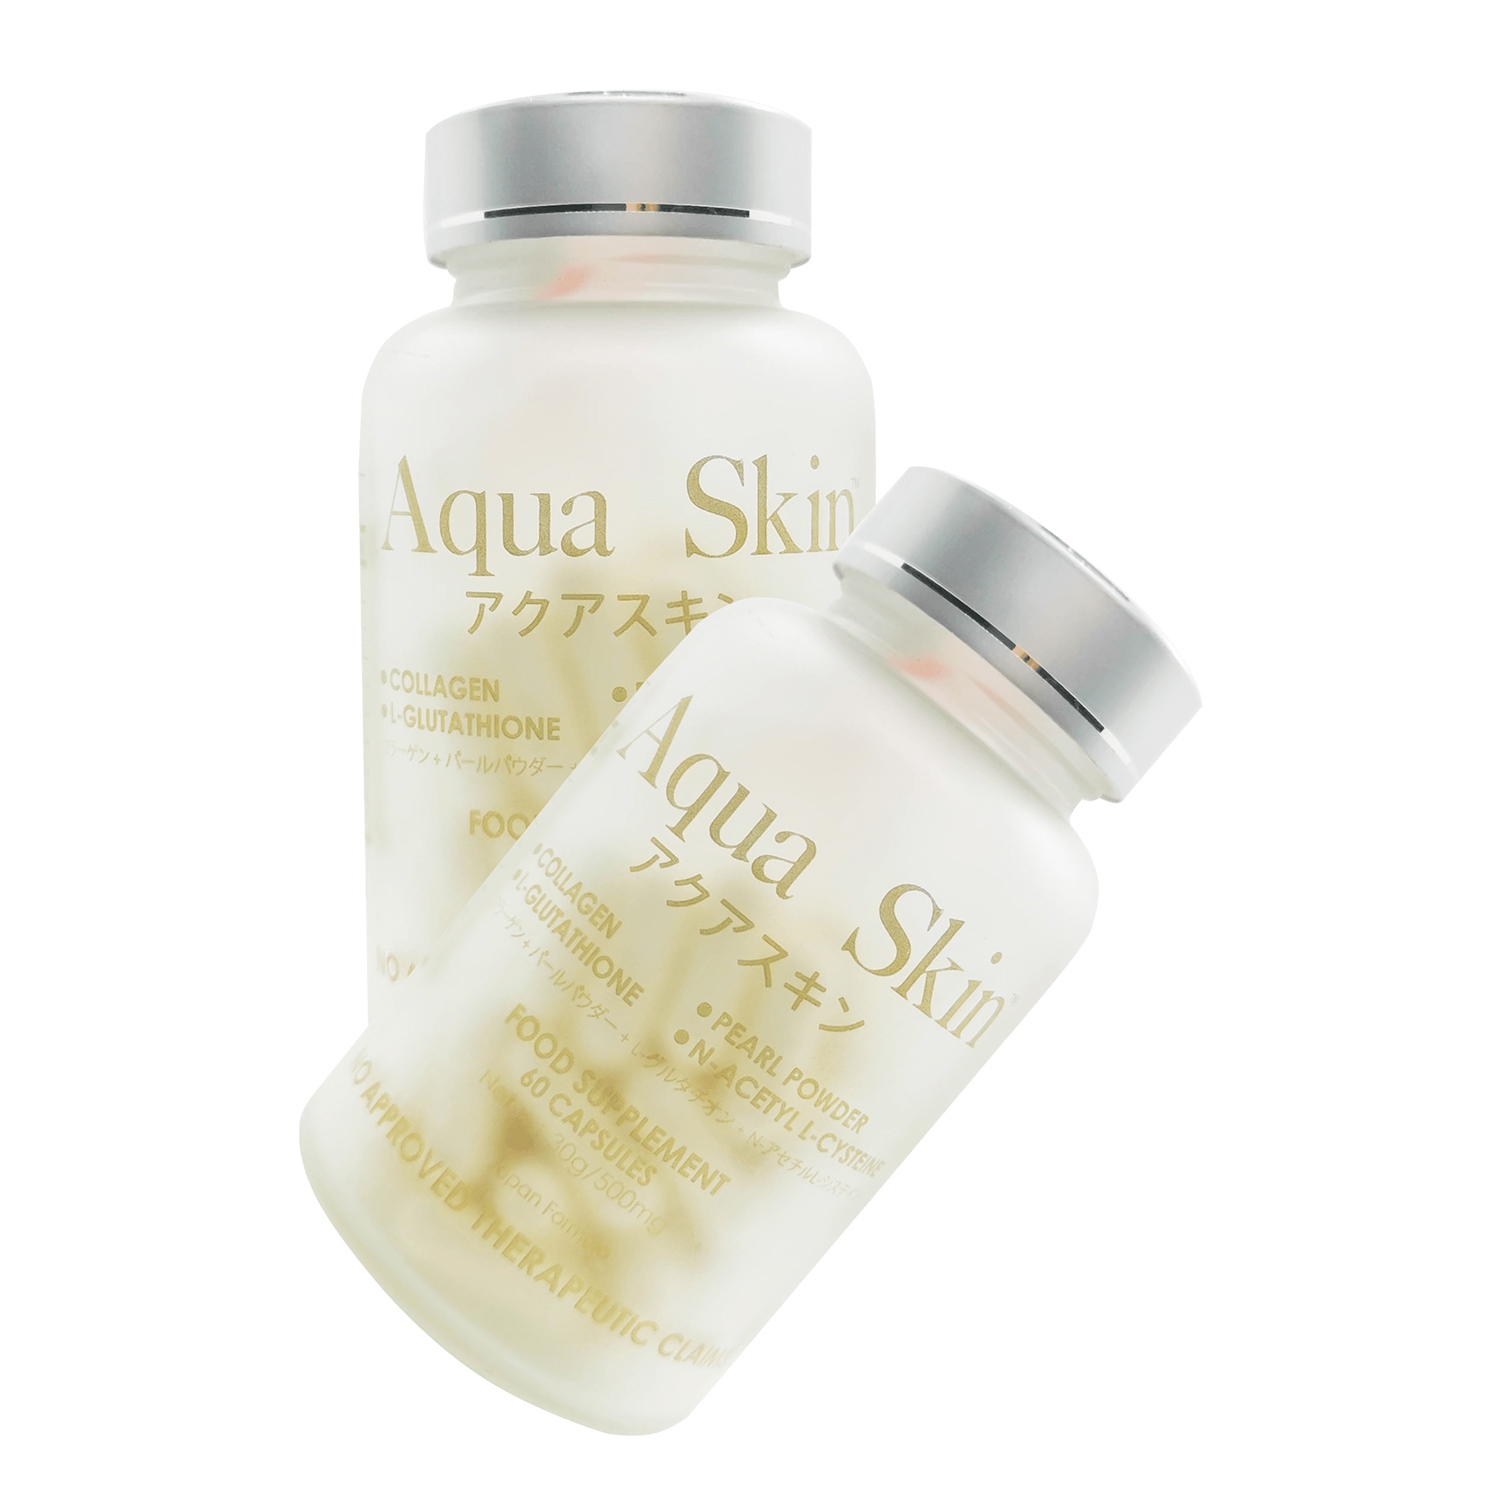 Aqua Skin Glutathione and Collagen Capsules